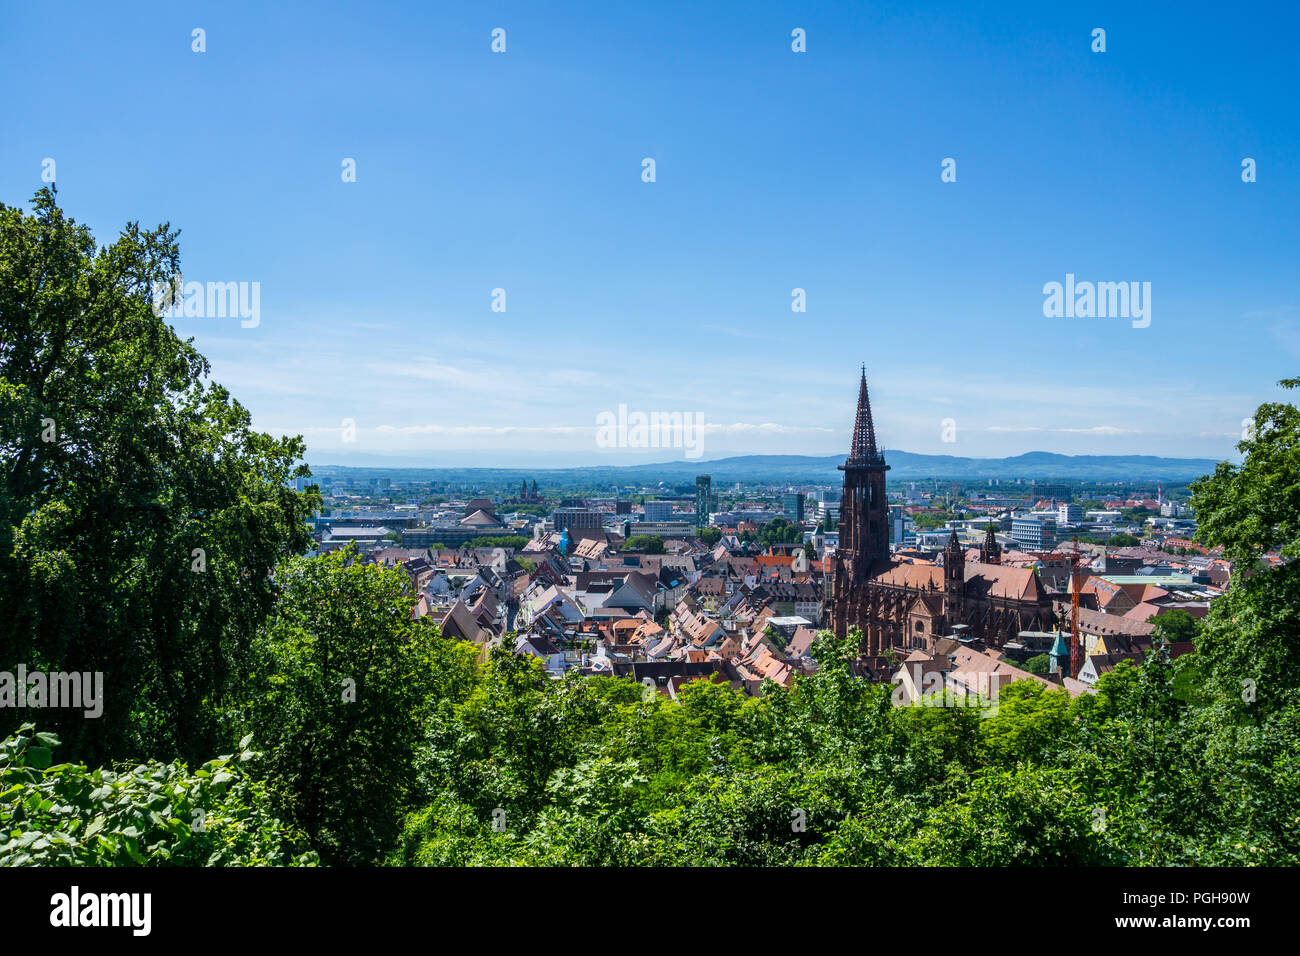 La Germania, il centro storico della città di Freiburg im Breisgau Foto Stock